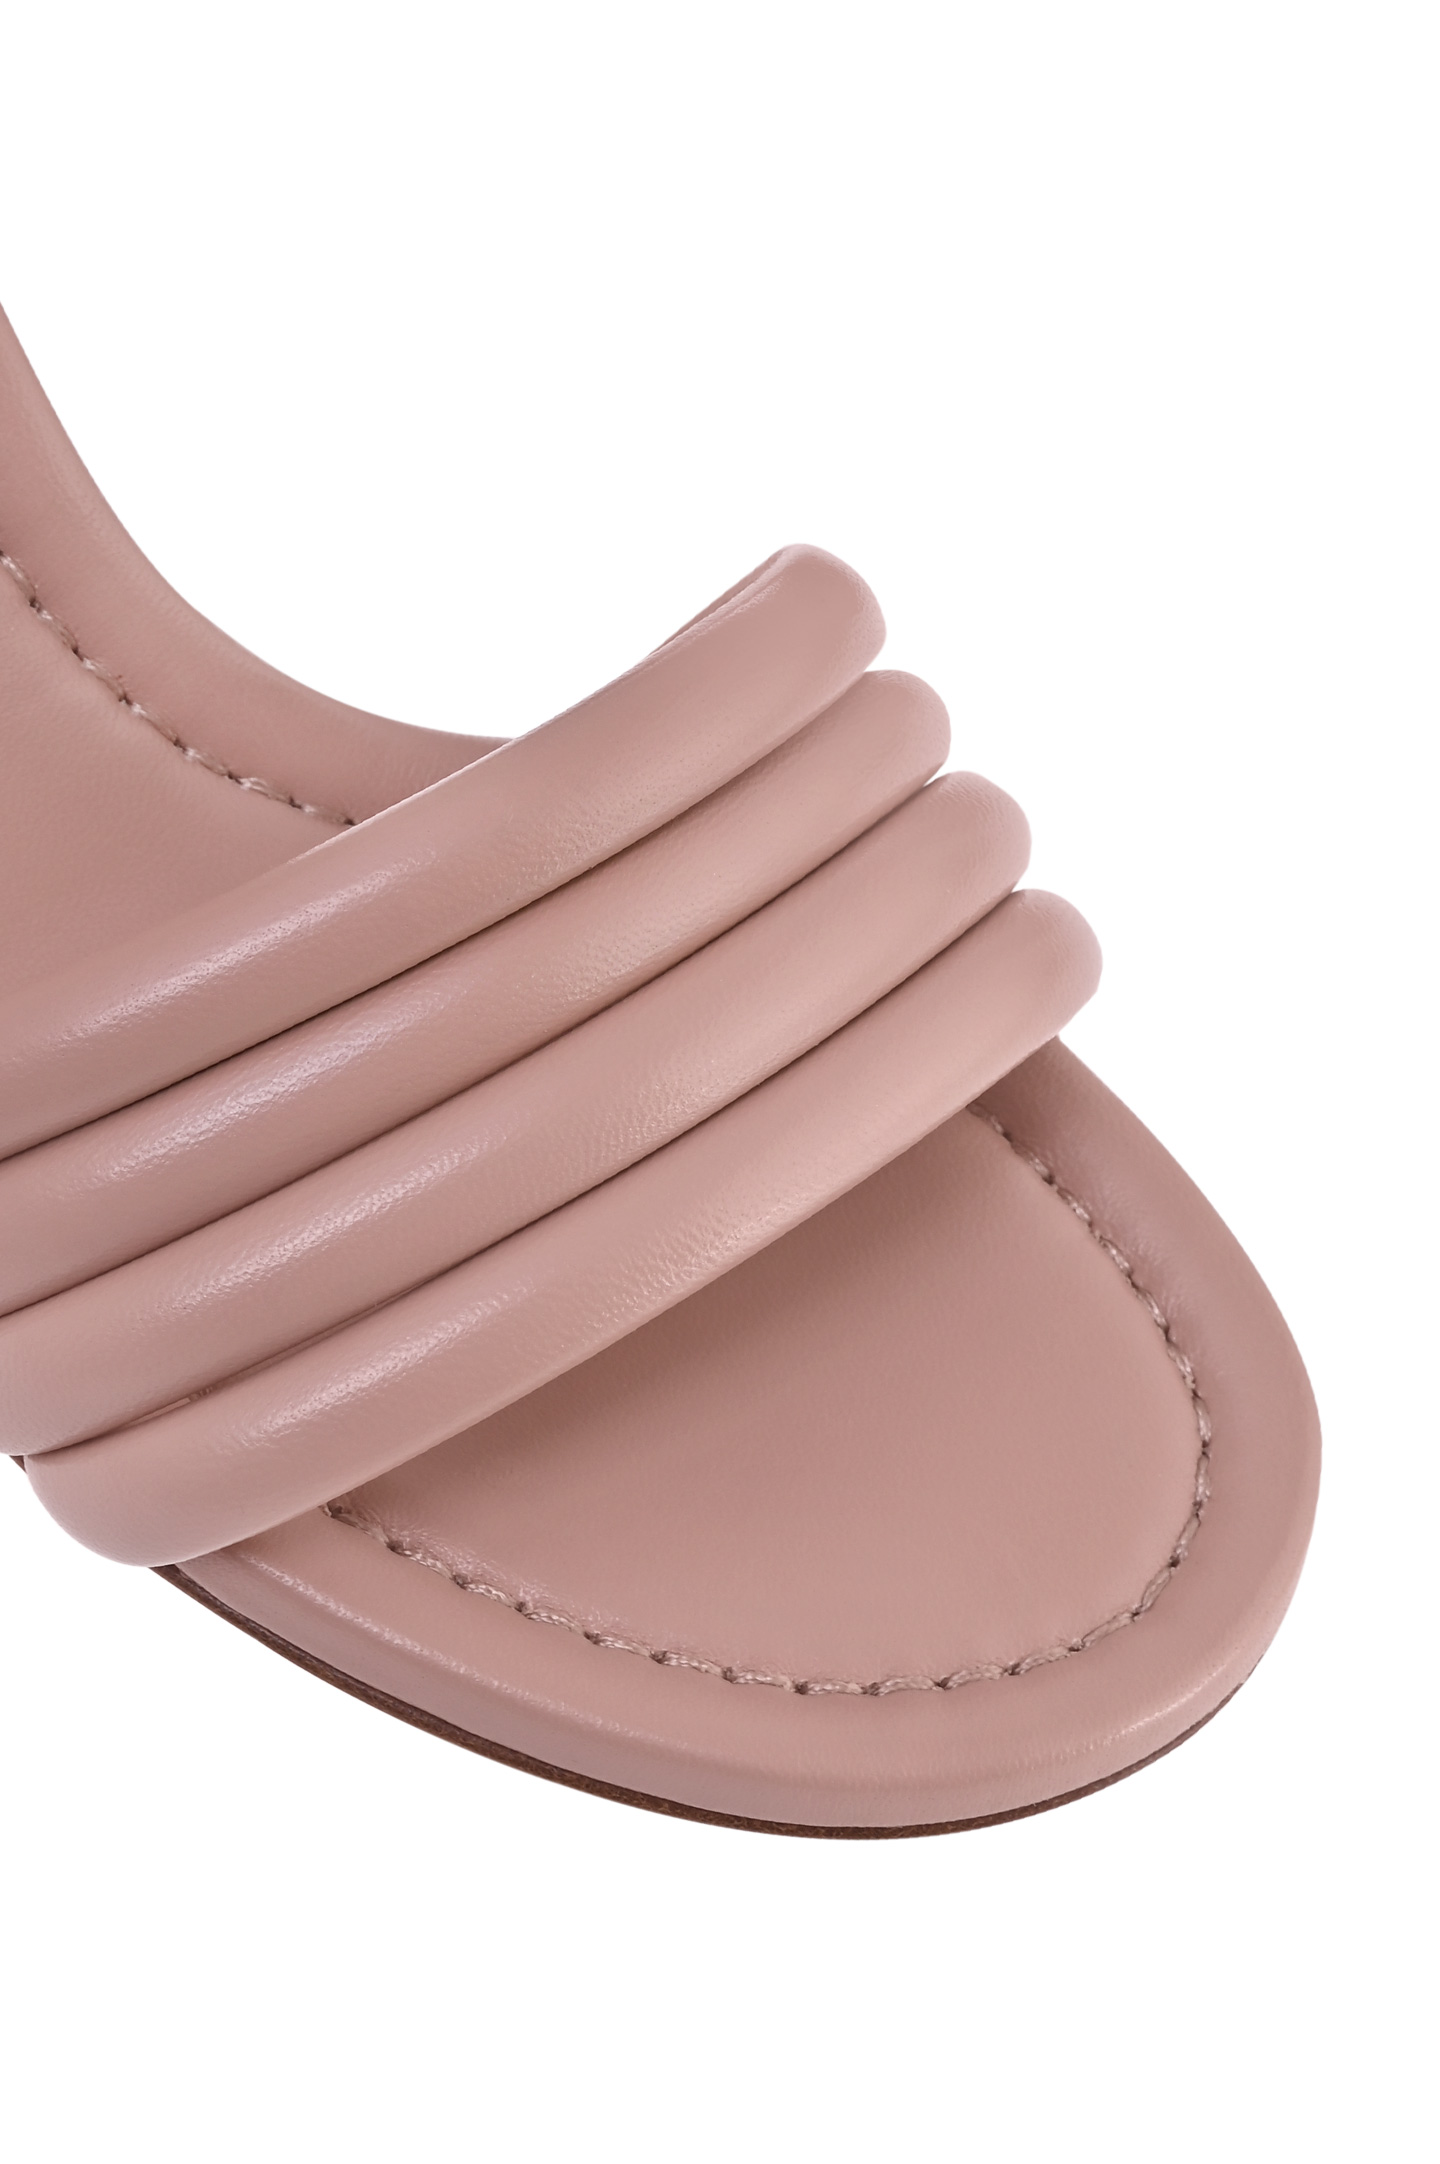 Мюли на широком каблуке GIANVITO ROSSI G16510.60RIC.NAPPEAH, цвет: Персиковый, Женский